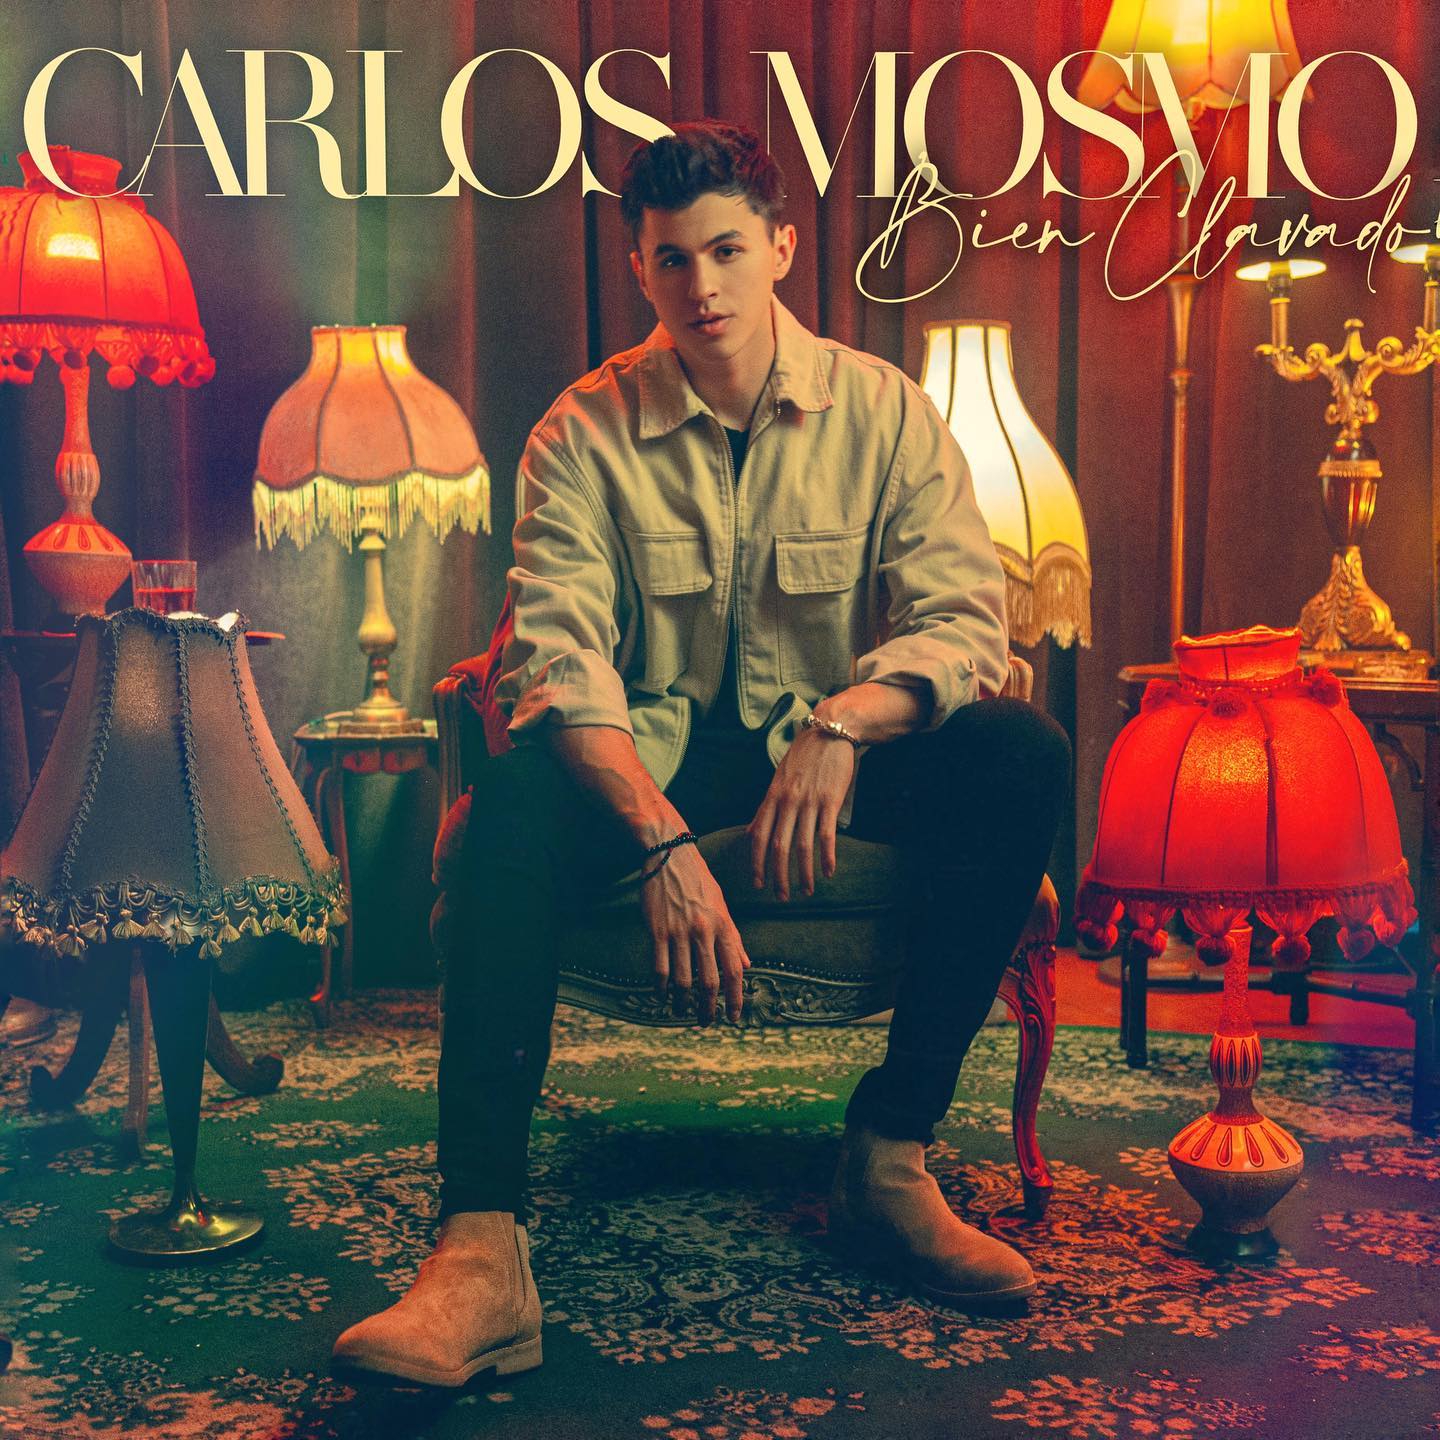 Carlos Mosmo promociona “Bien Clavado”, su tercer sencillo